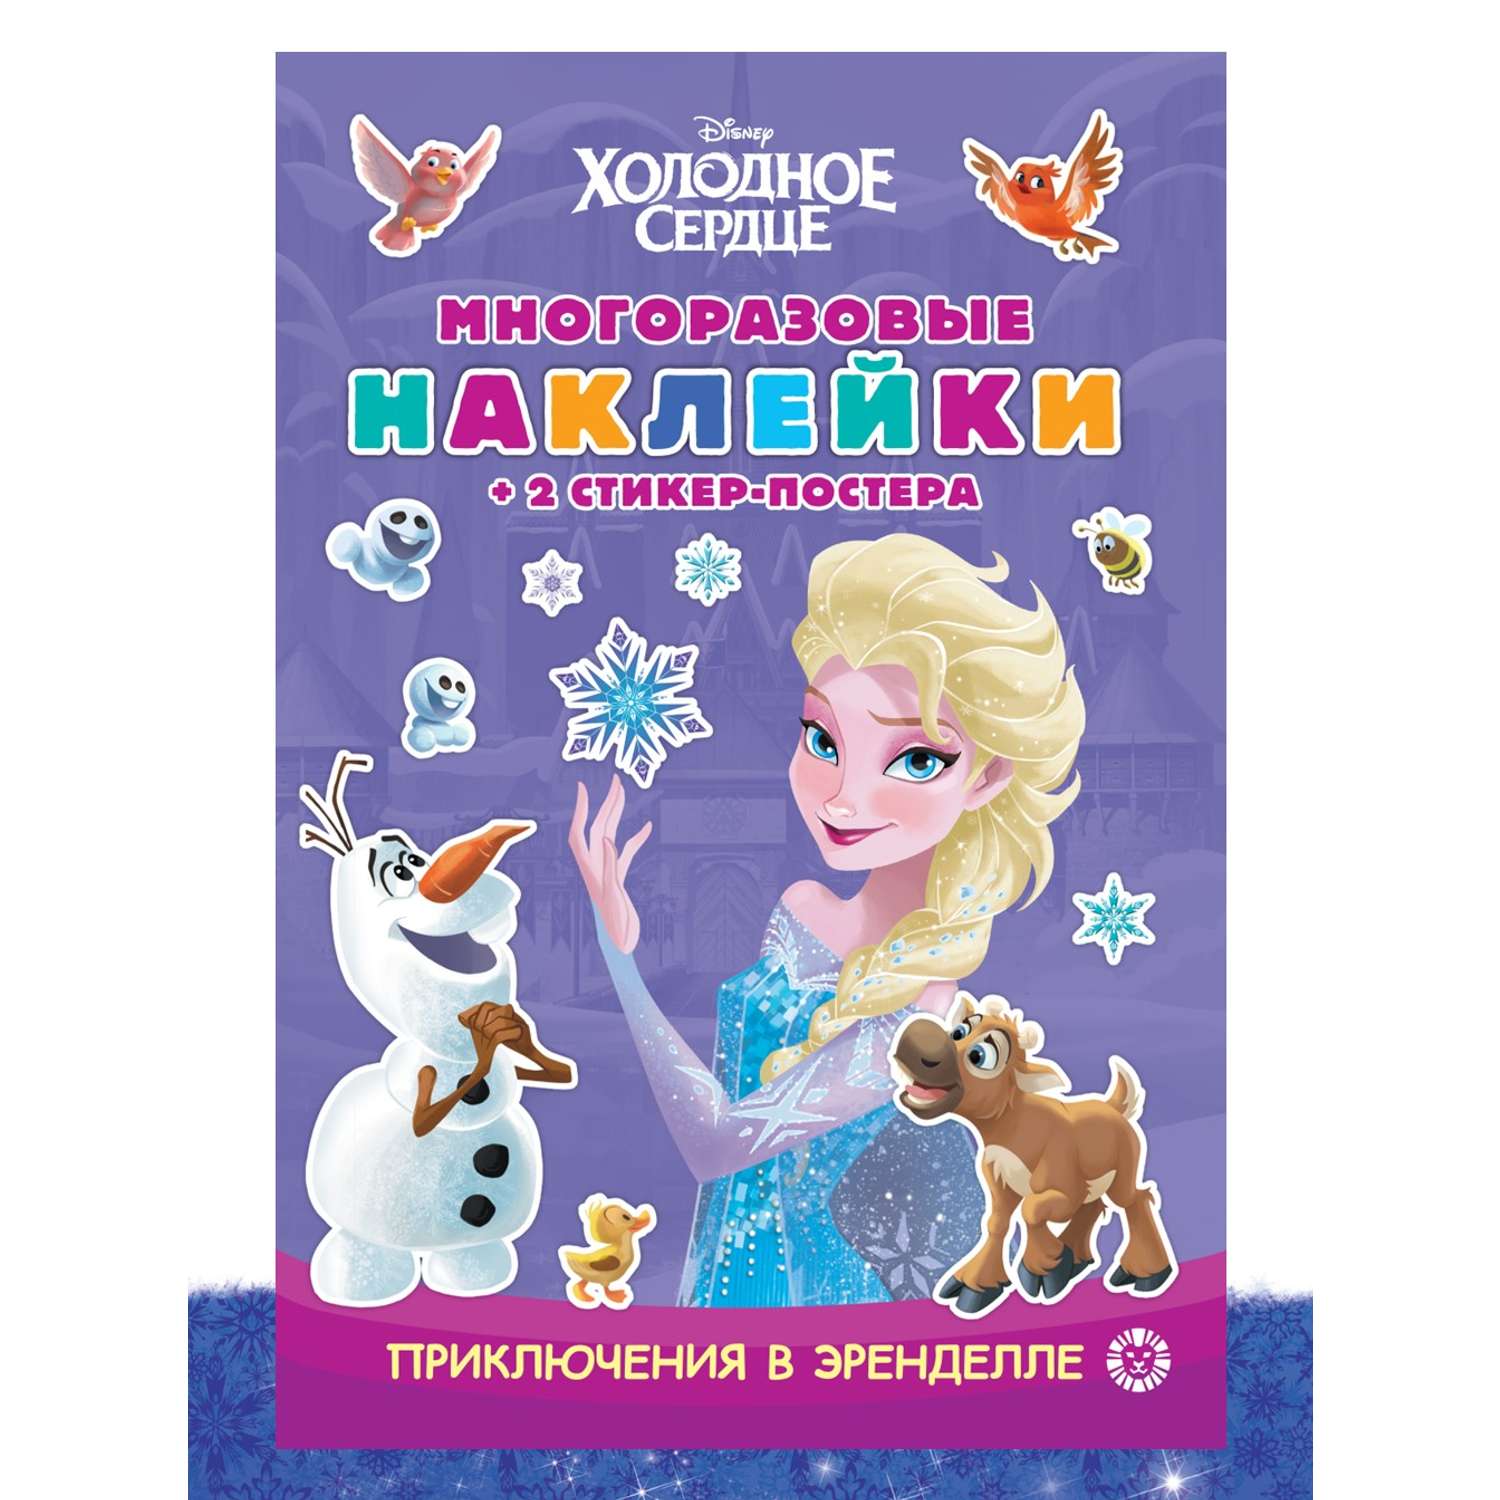 Комплект Disney Холодное сердце 100 и 1 головоломка + Многоразовые наклейки - фото 2